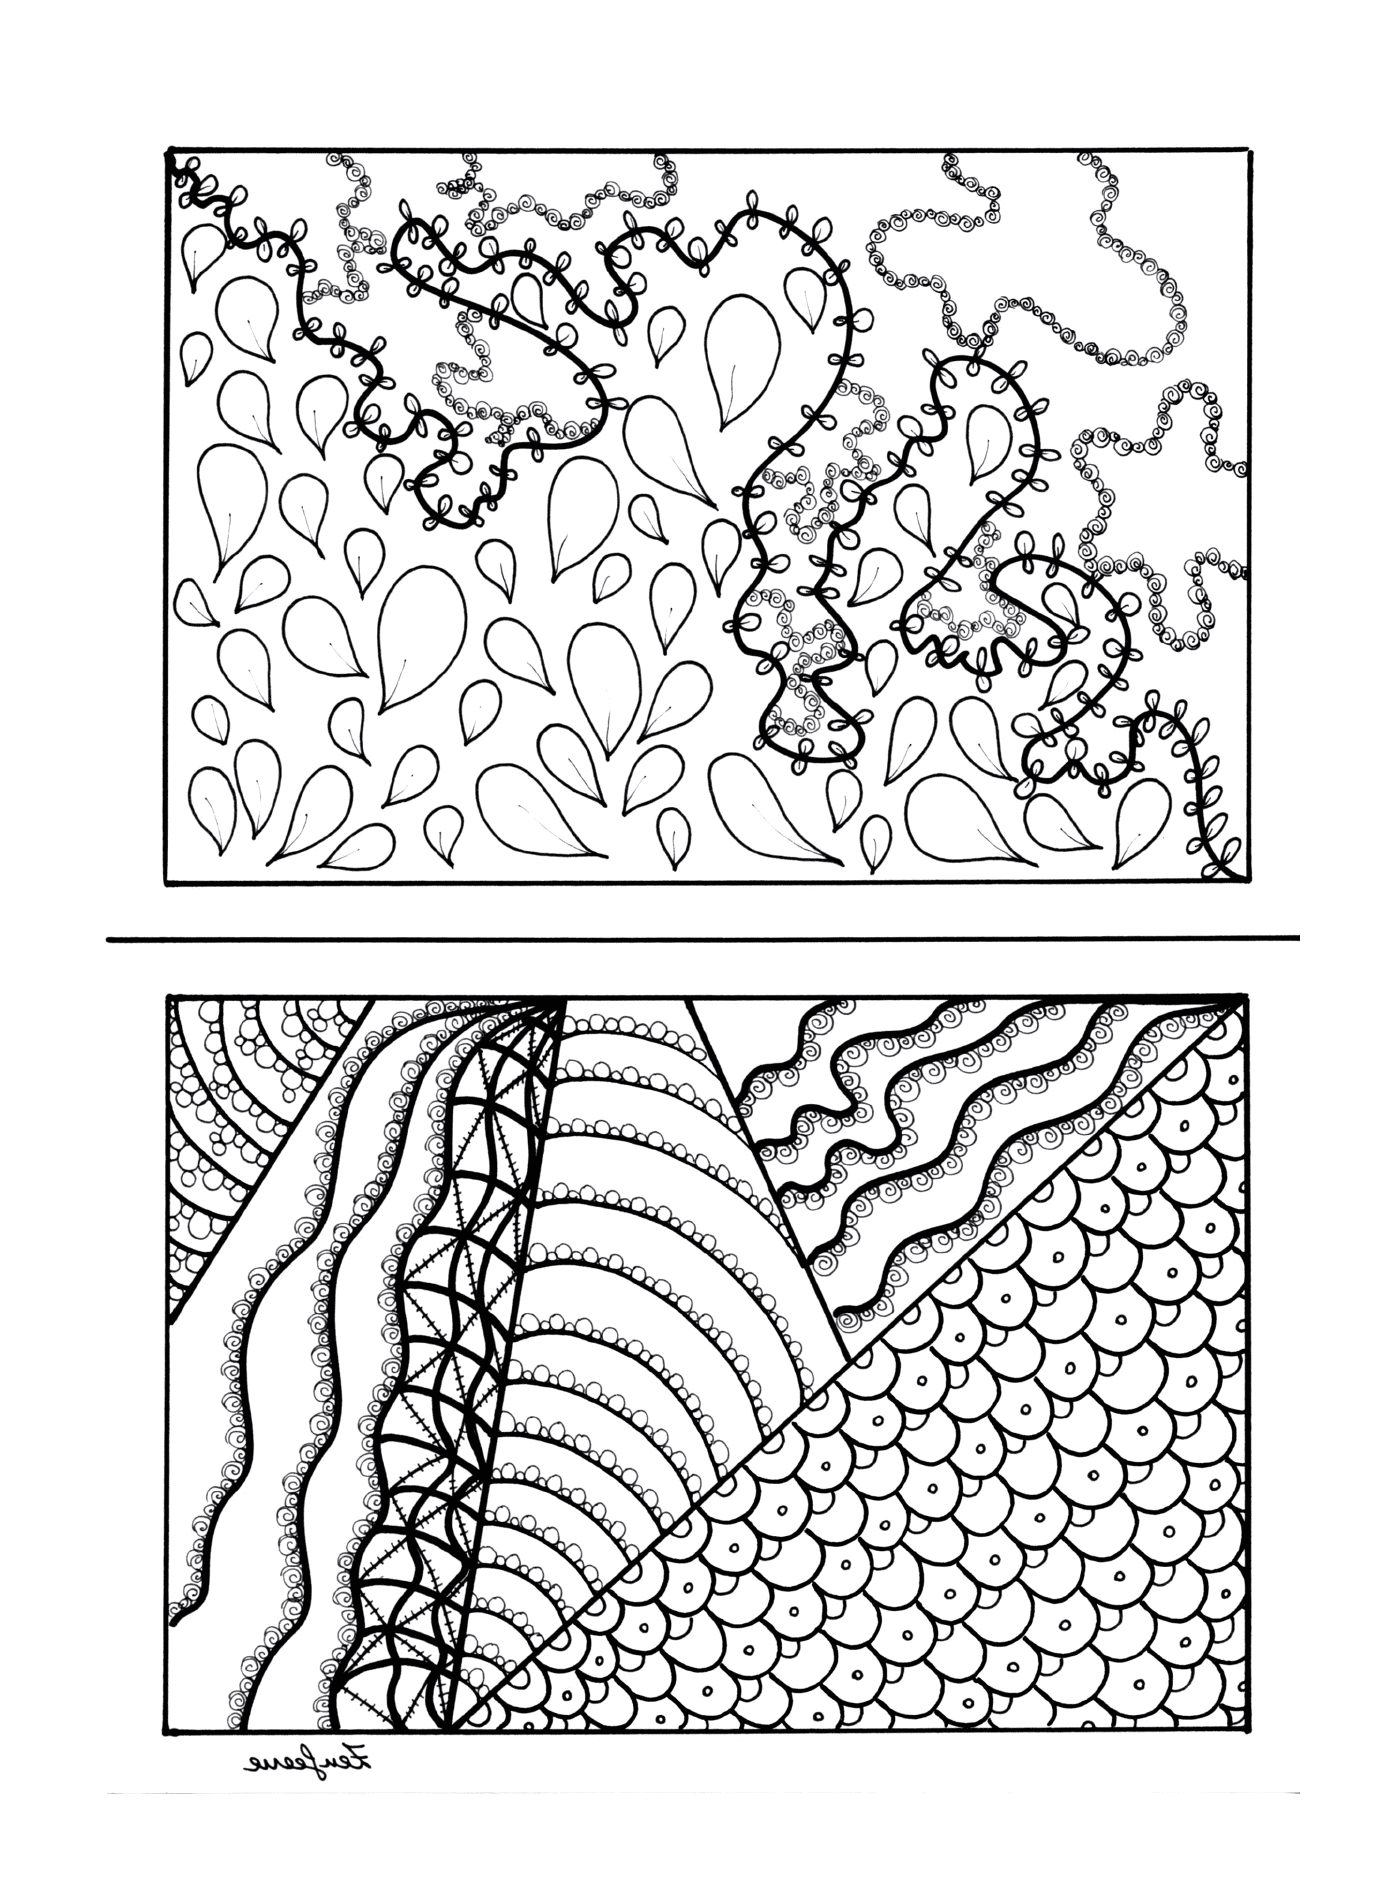  Desenhos em preto e branco de uma planta e uma torre de água 